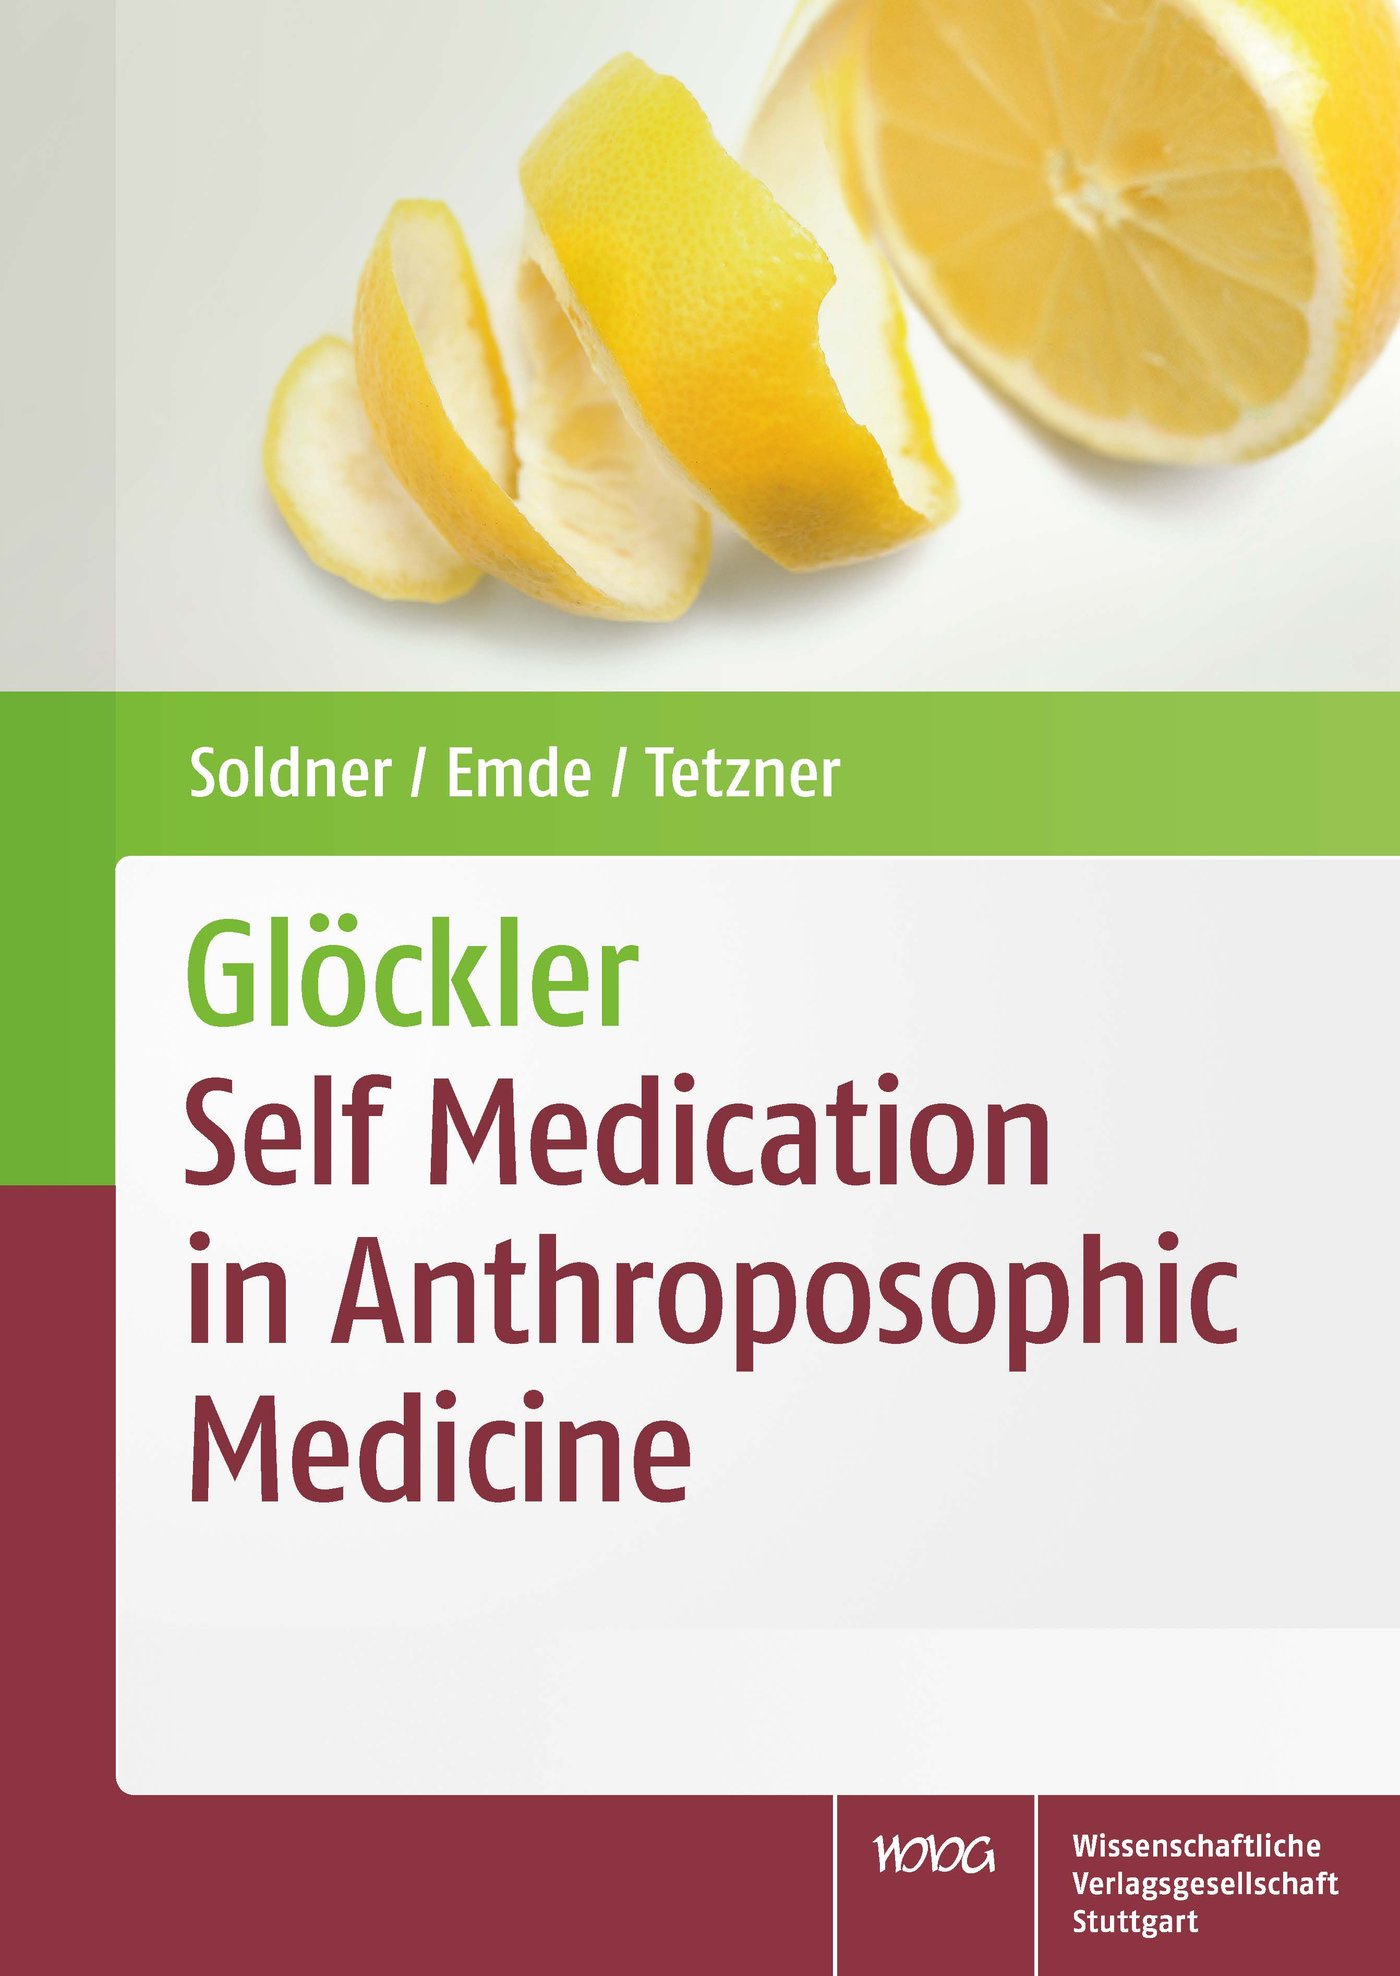 Glöckler – Self Medication in Anthroposophic Medicine